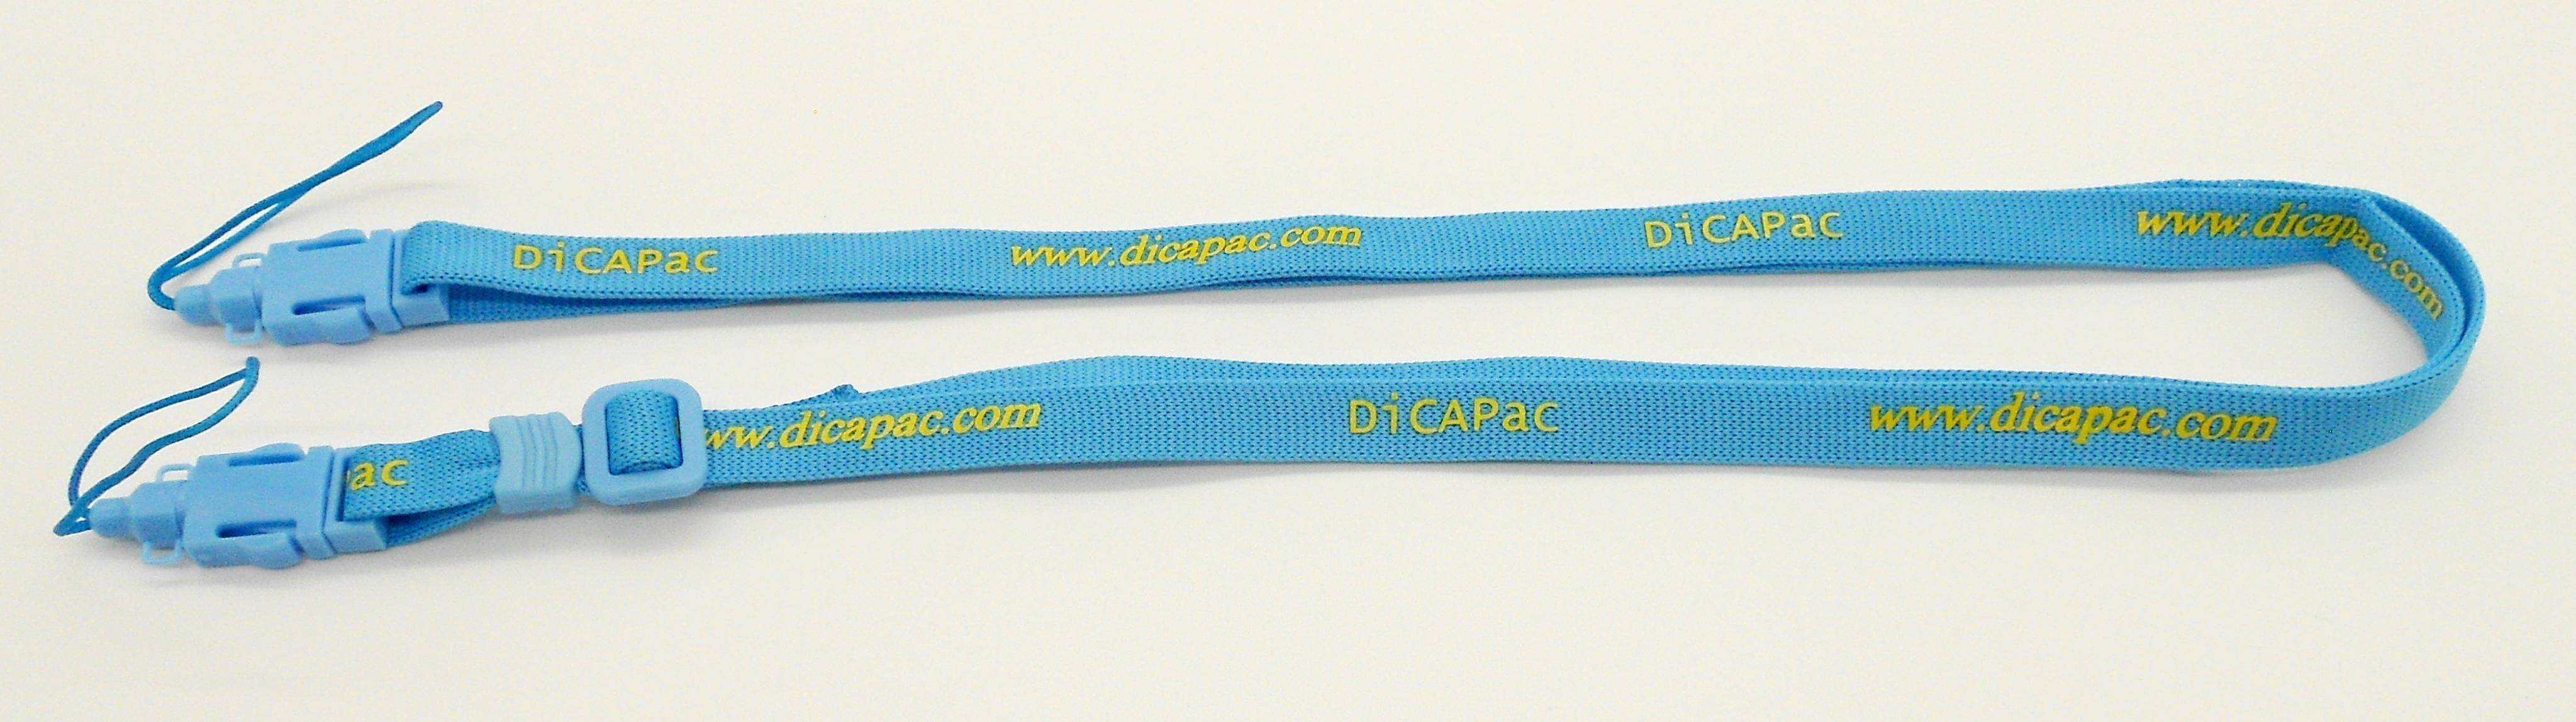 dicapac ersatzteil trageriehmen neck strap viele dicapac modelle - blau